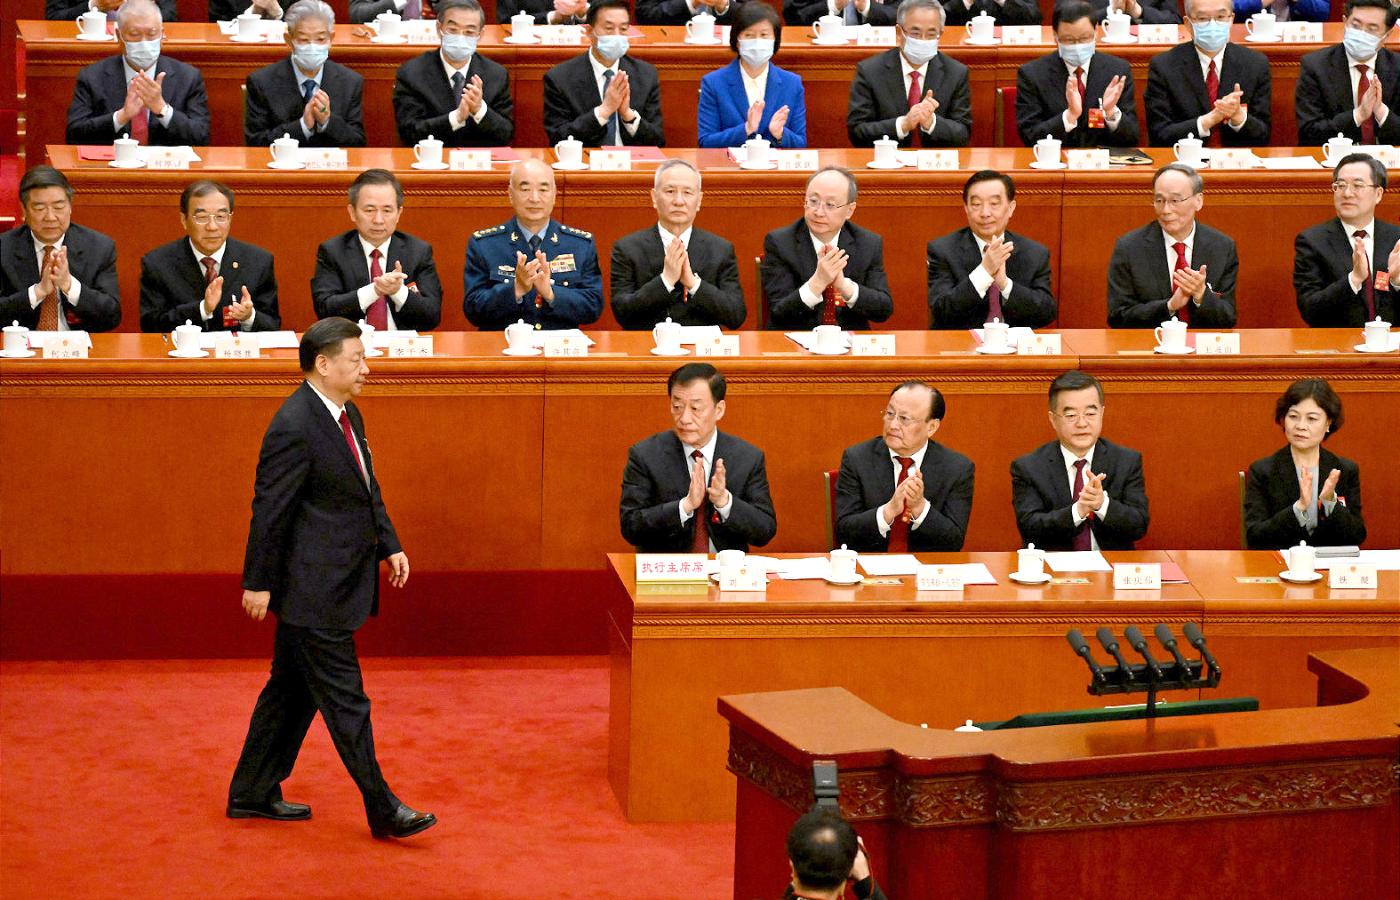 Podczas dorocznego zjazdu udawany chiński parlament formalnie wybrał Xi Jinpinga na trzecią kadencję prezydenta, jak potocznie określa się przewodniczącego Chińskiej Republiki Ludowej.